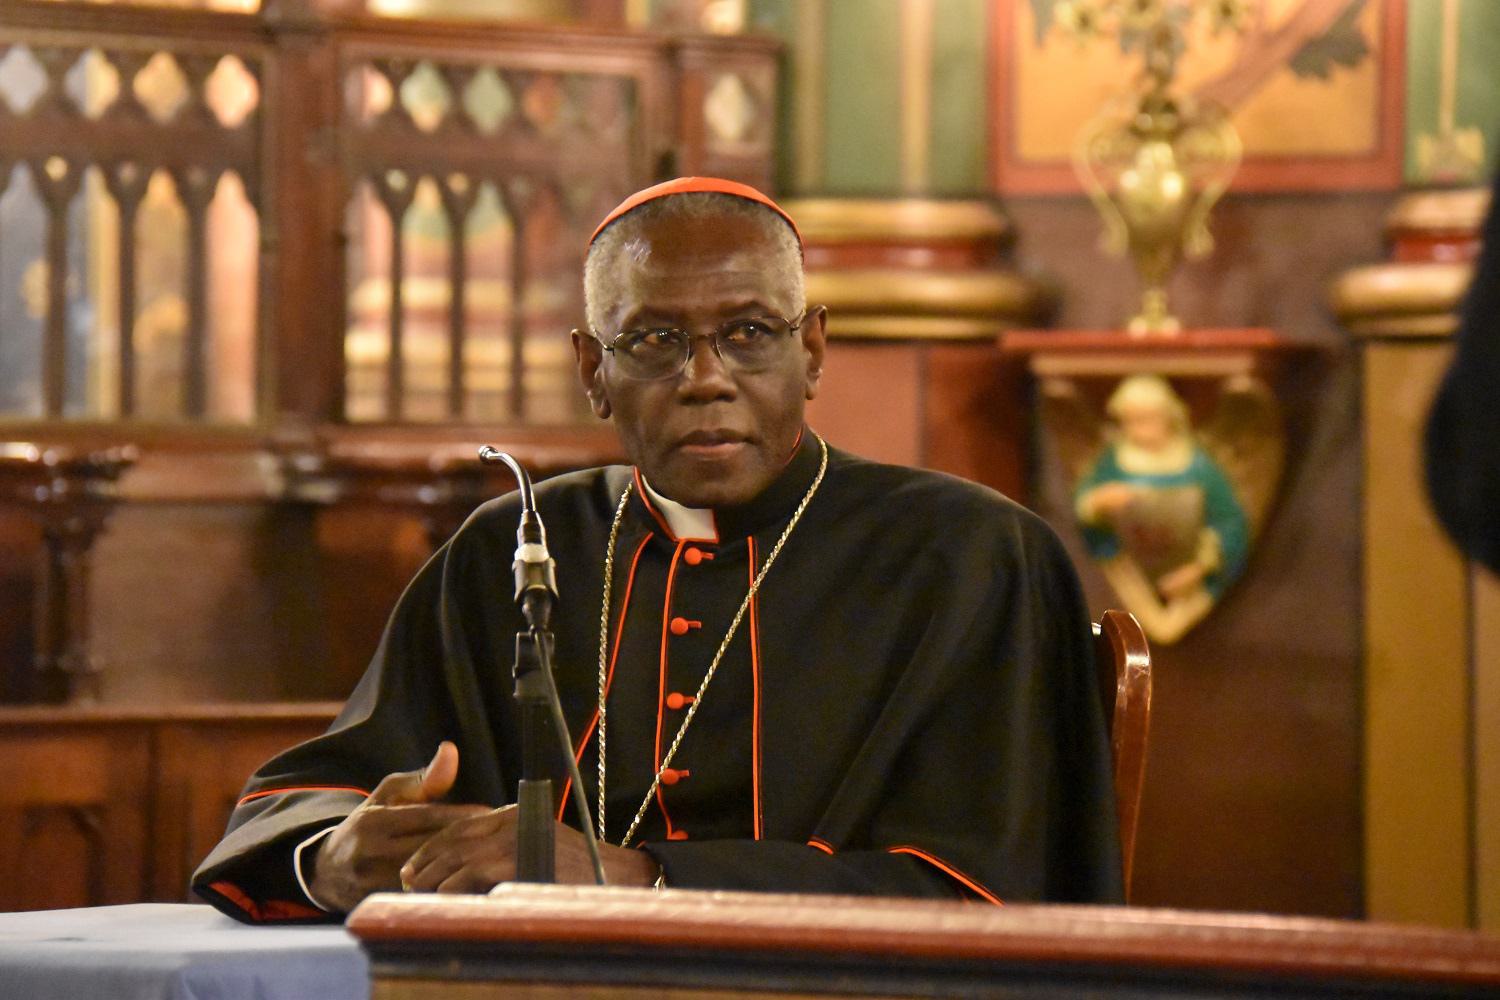 Bisschop: ‘Massamigratie ondermijnt cultuur Europese landen’